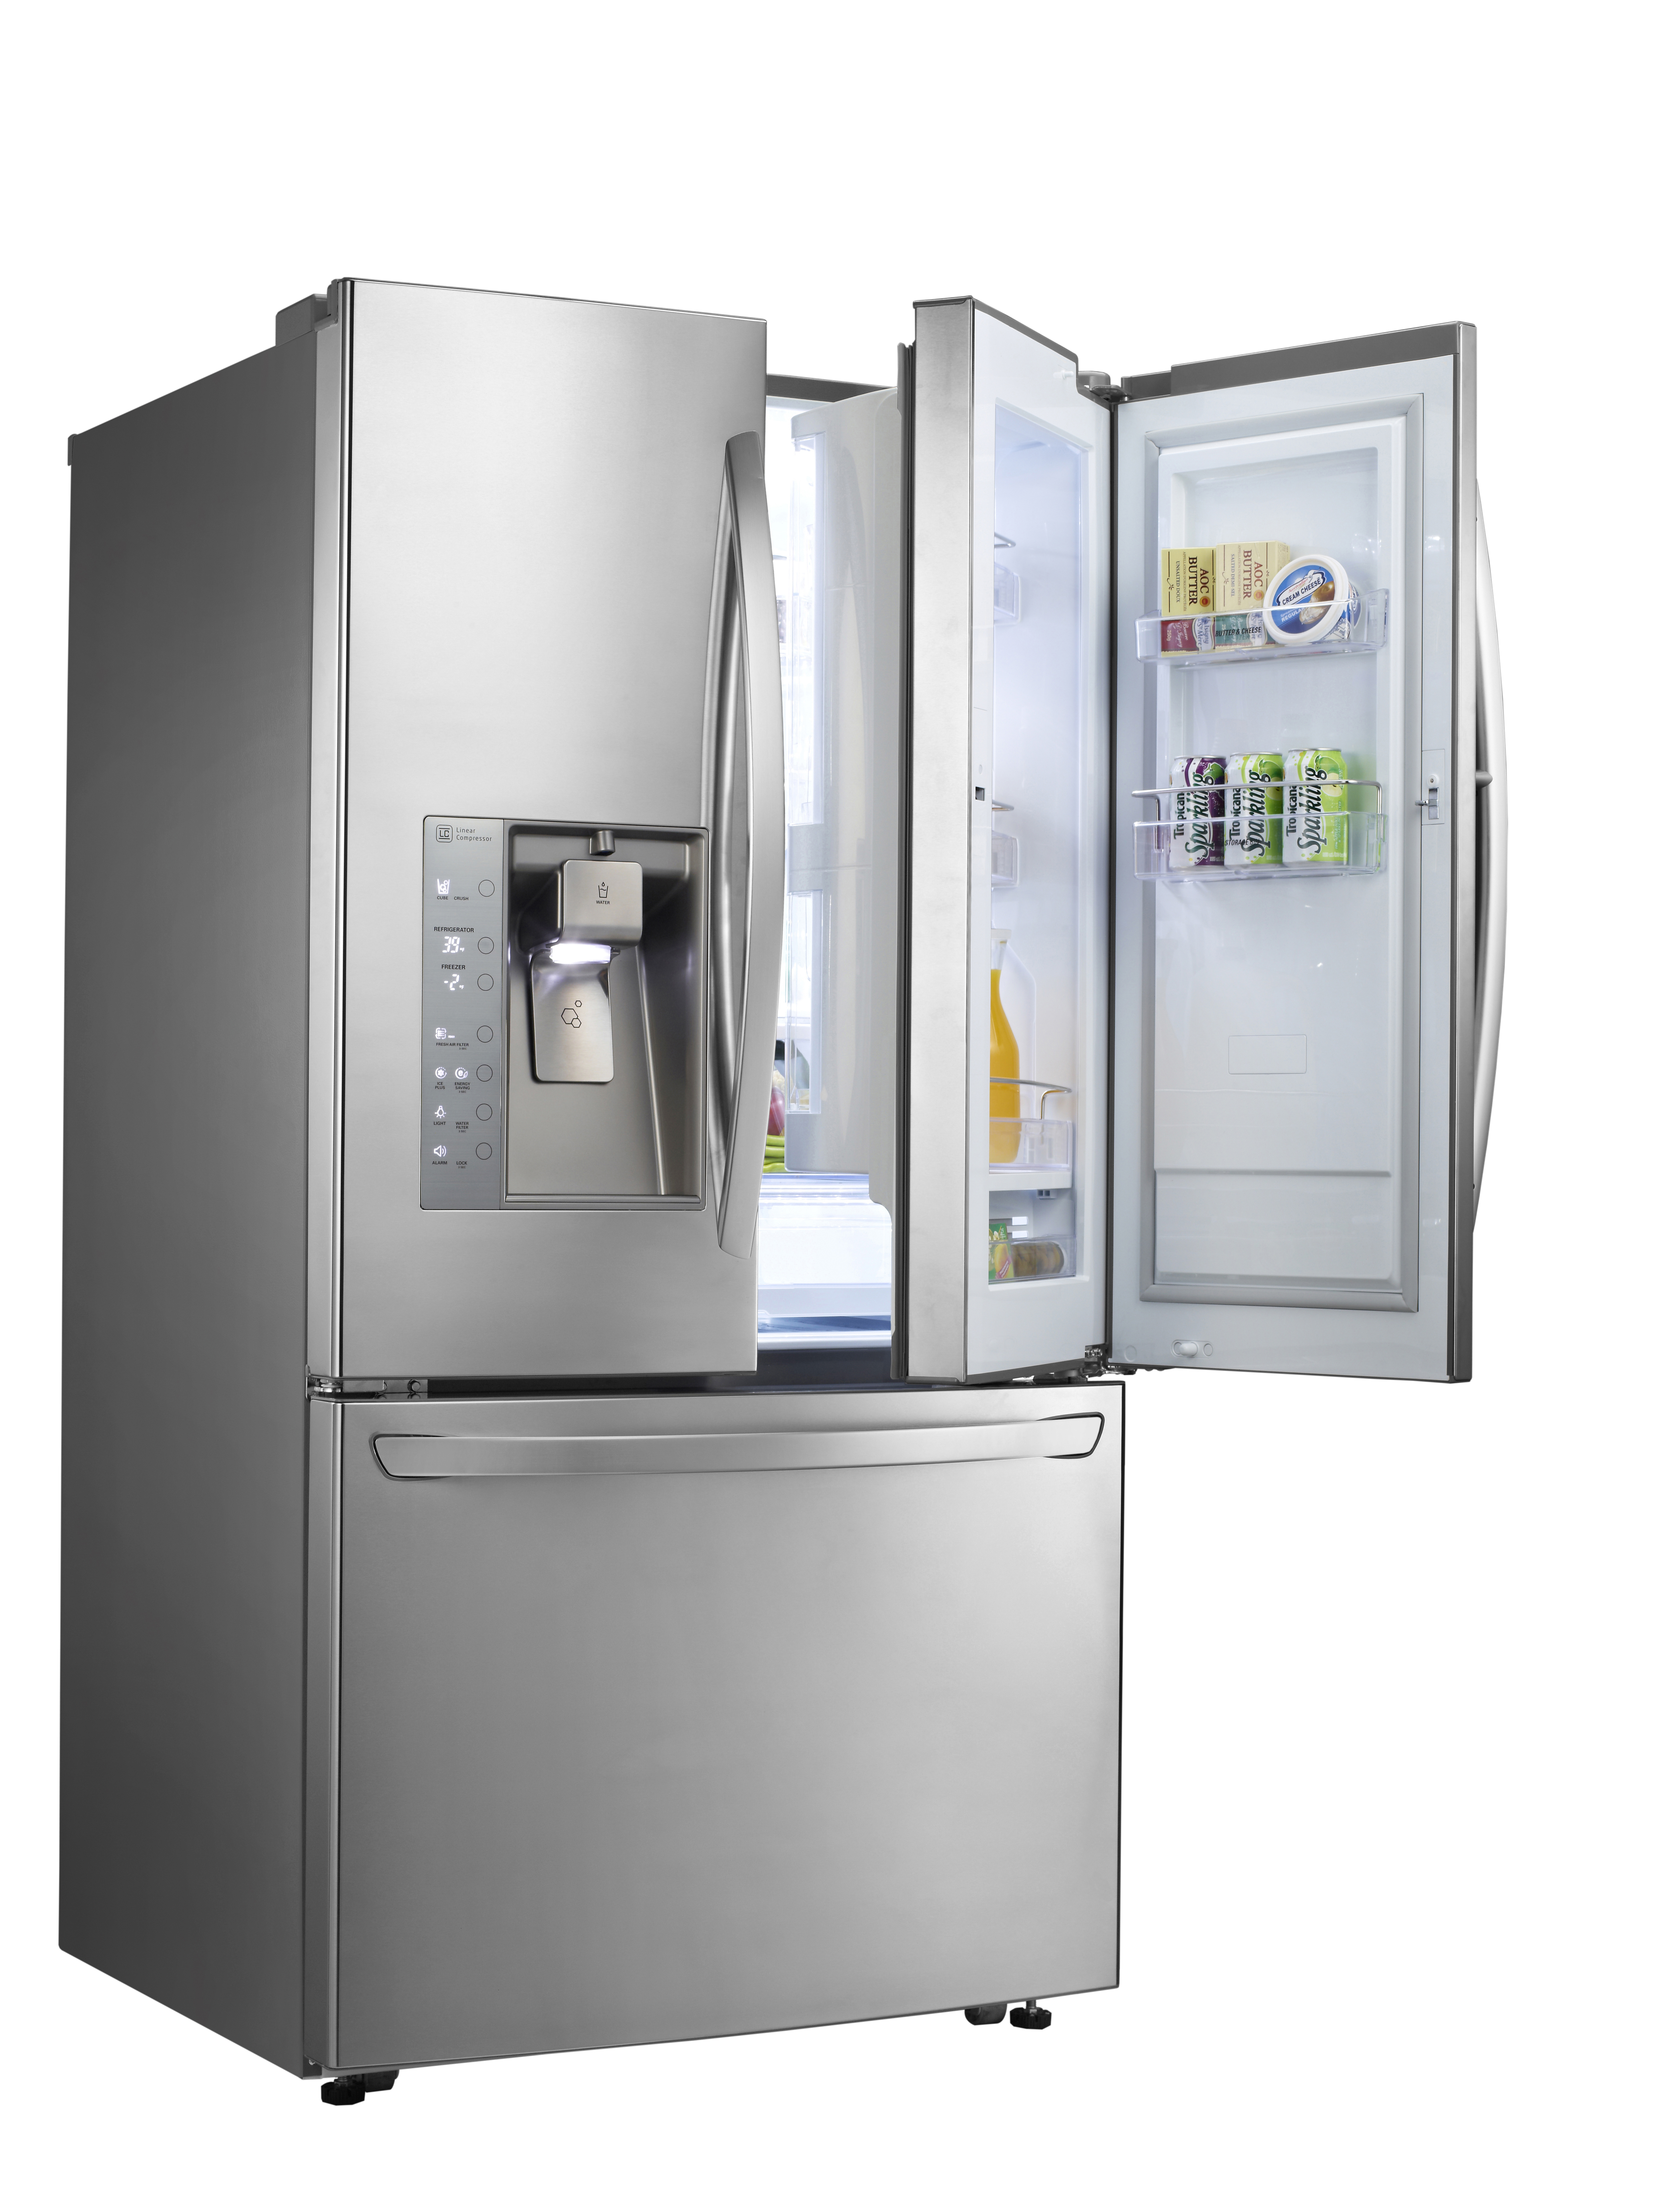 LG’s three-door French-Door refrigerator with doors opened to show off its Door-in-Door feature